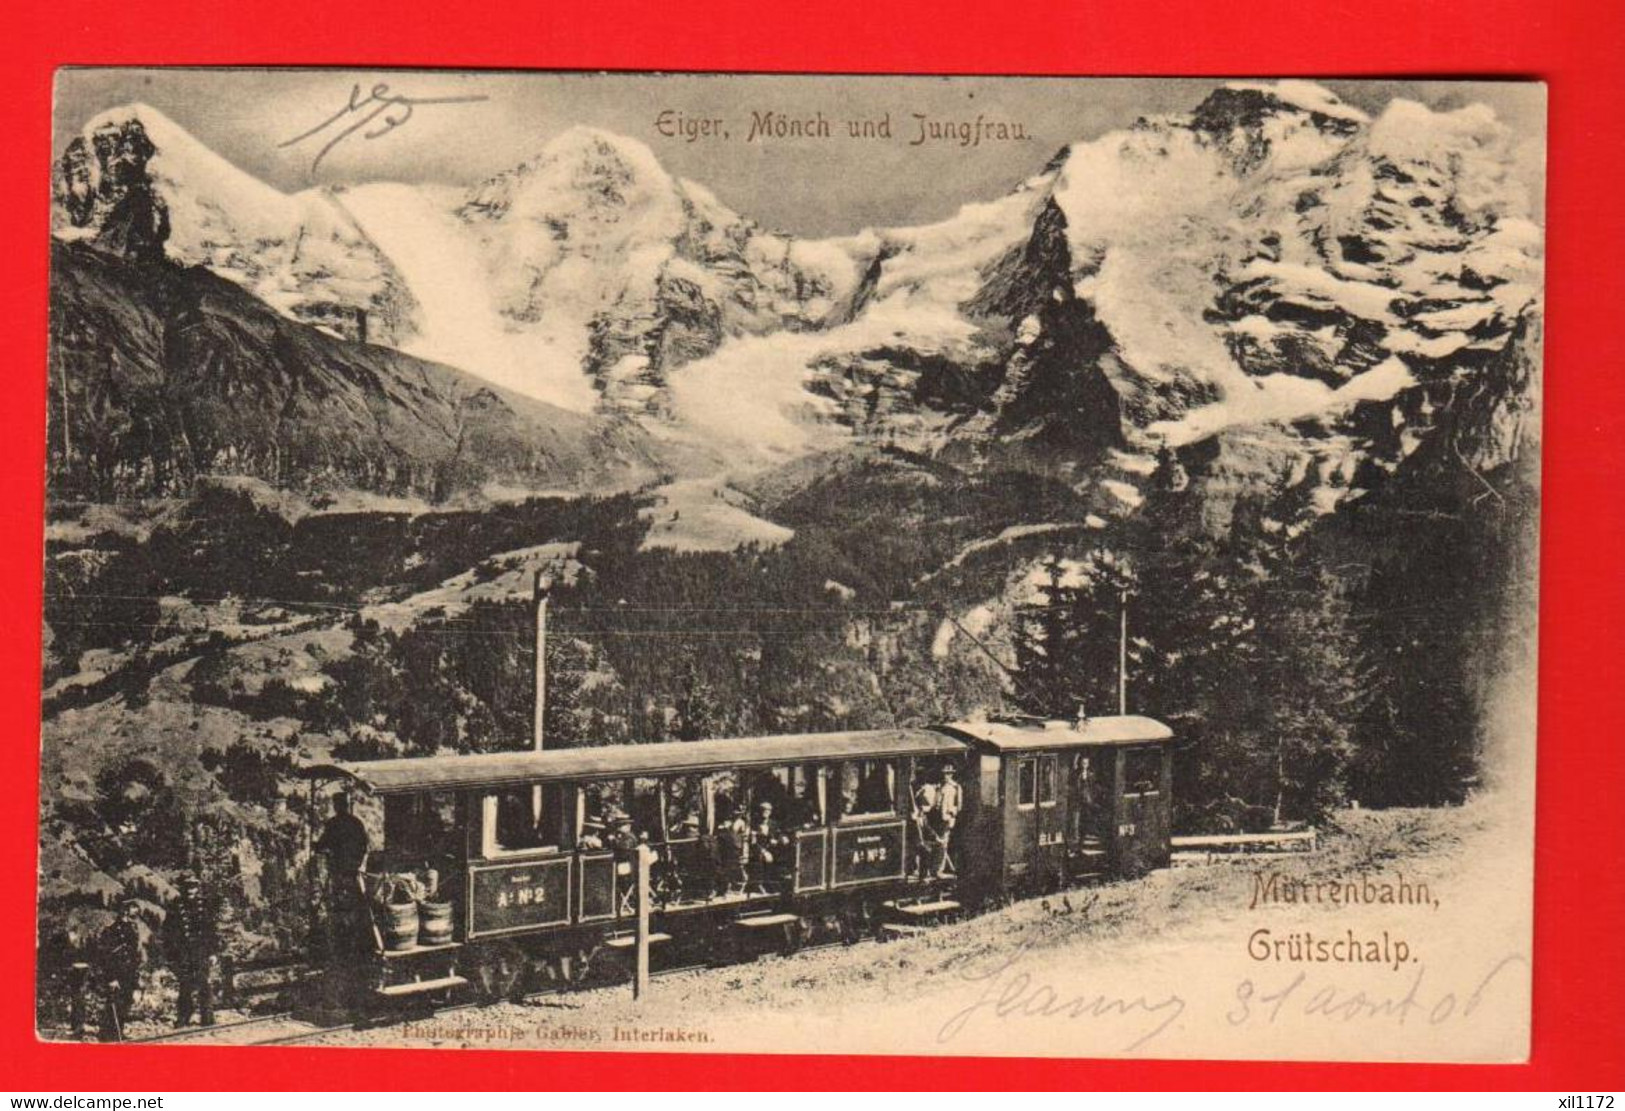 ZUP-05  Mürren Bahn Grütschalp  BELEBT. Eiger Mönch Jungfrau  Gelaufen 1906 - Mürren